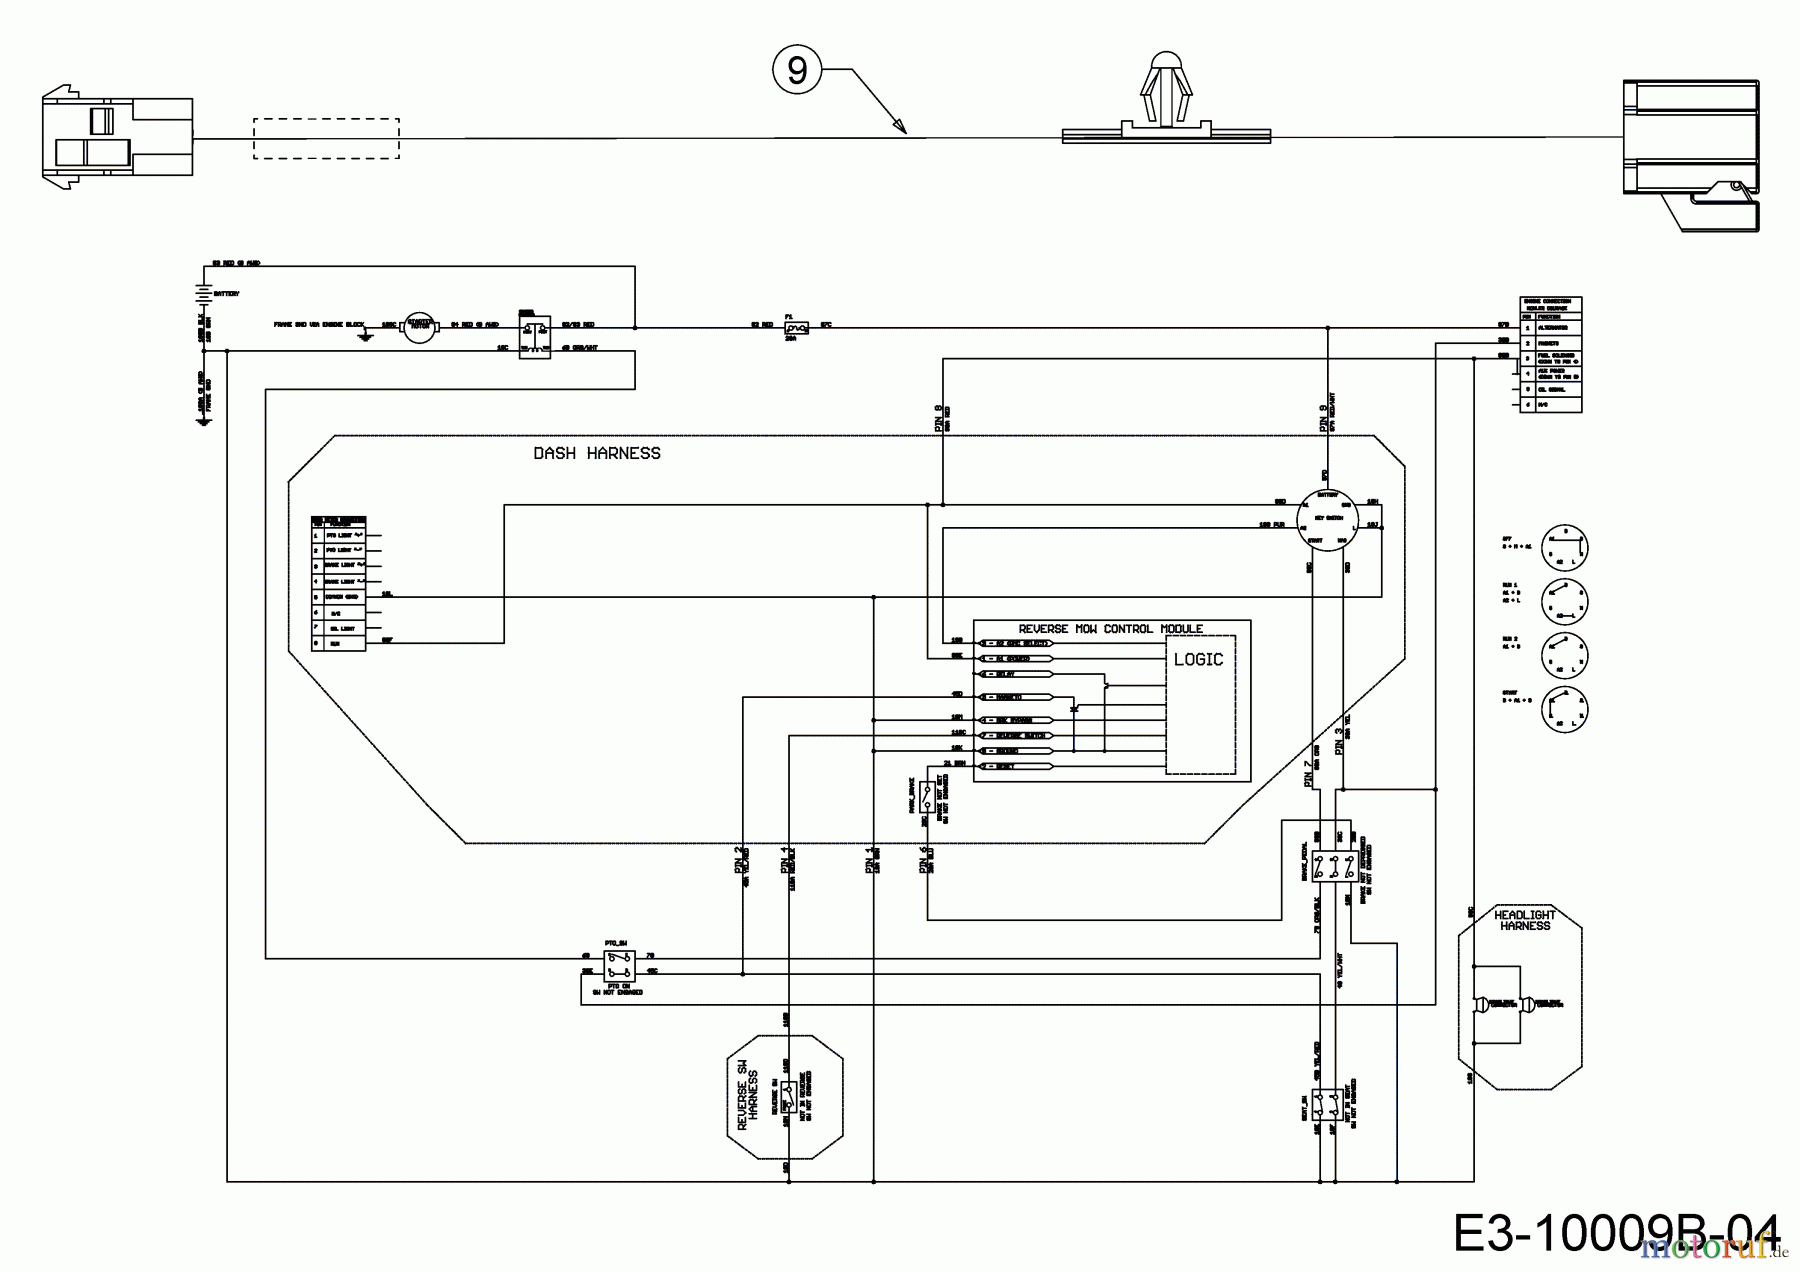  Cub Cadet Lawn tractors XT1 OS96 13A8A1CF603  (2019) Wiring diagram reverse